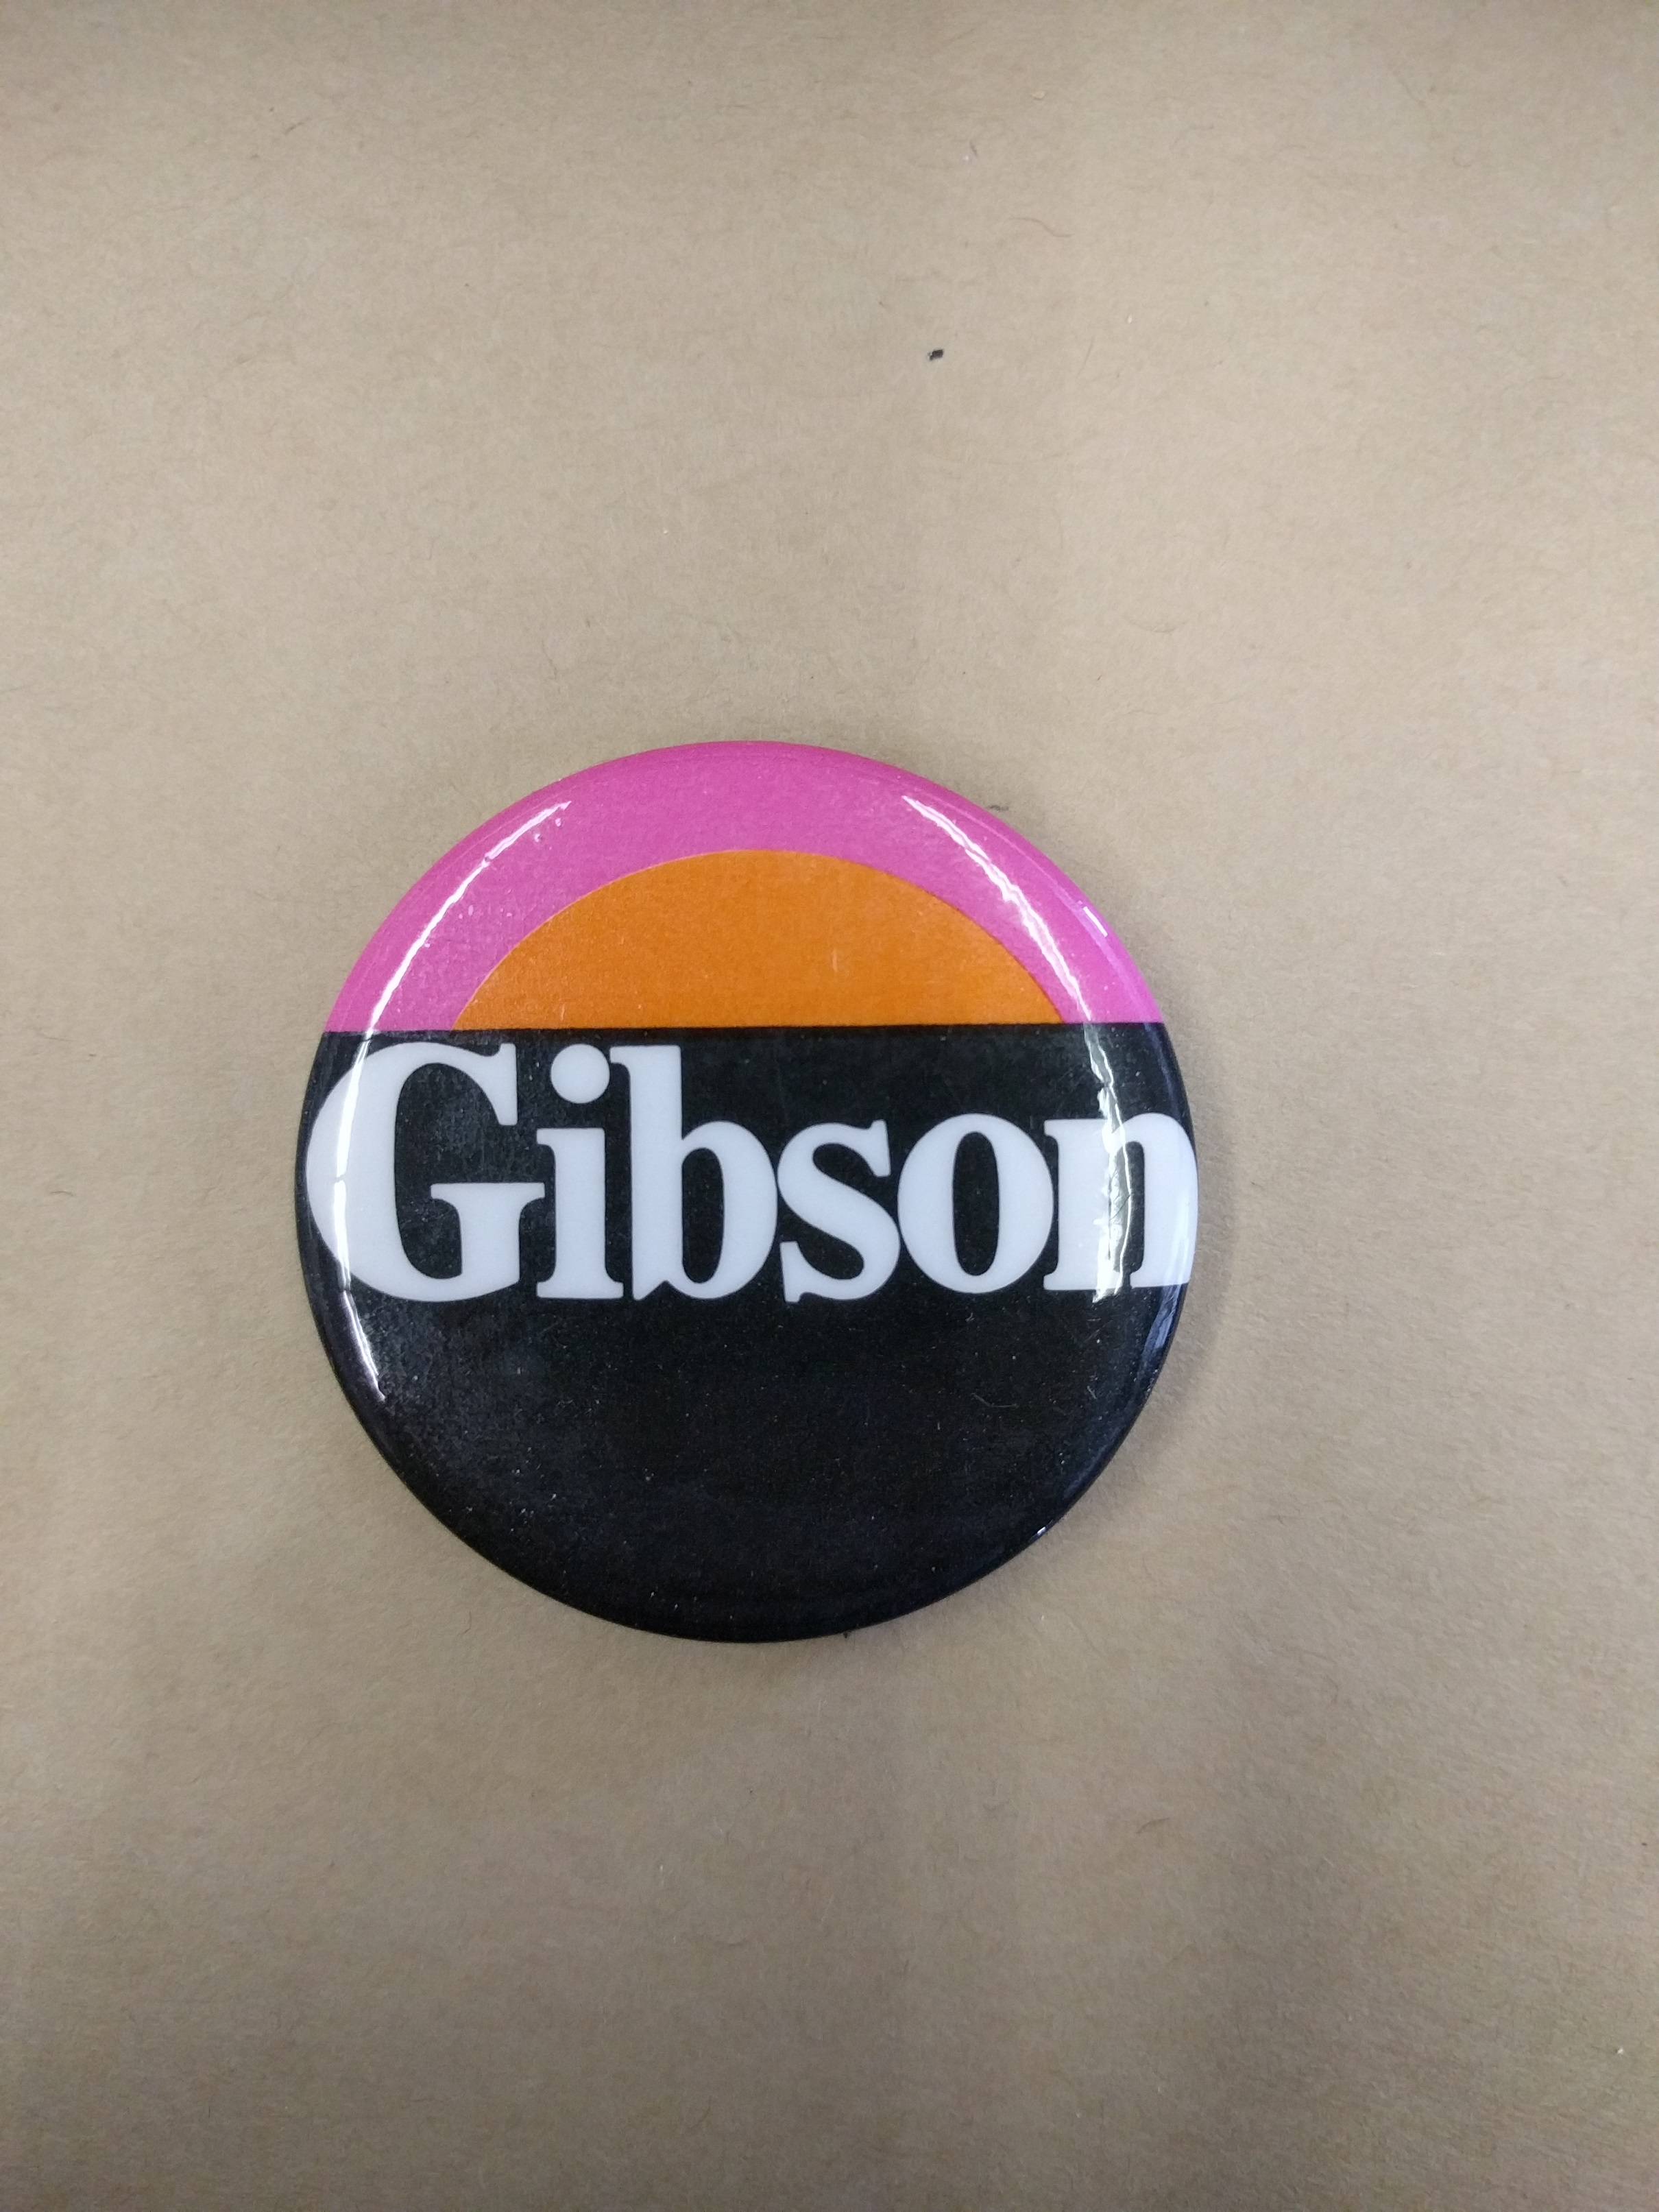 Ken Gibson Campaign Button (1970)